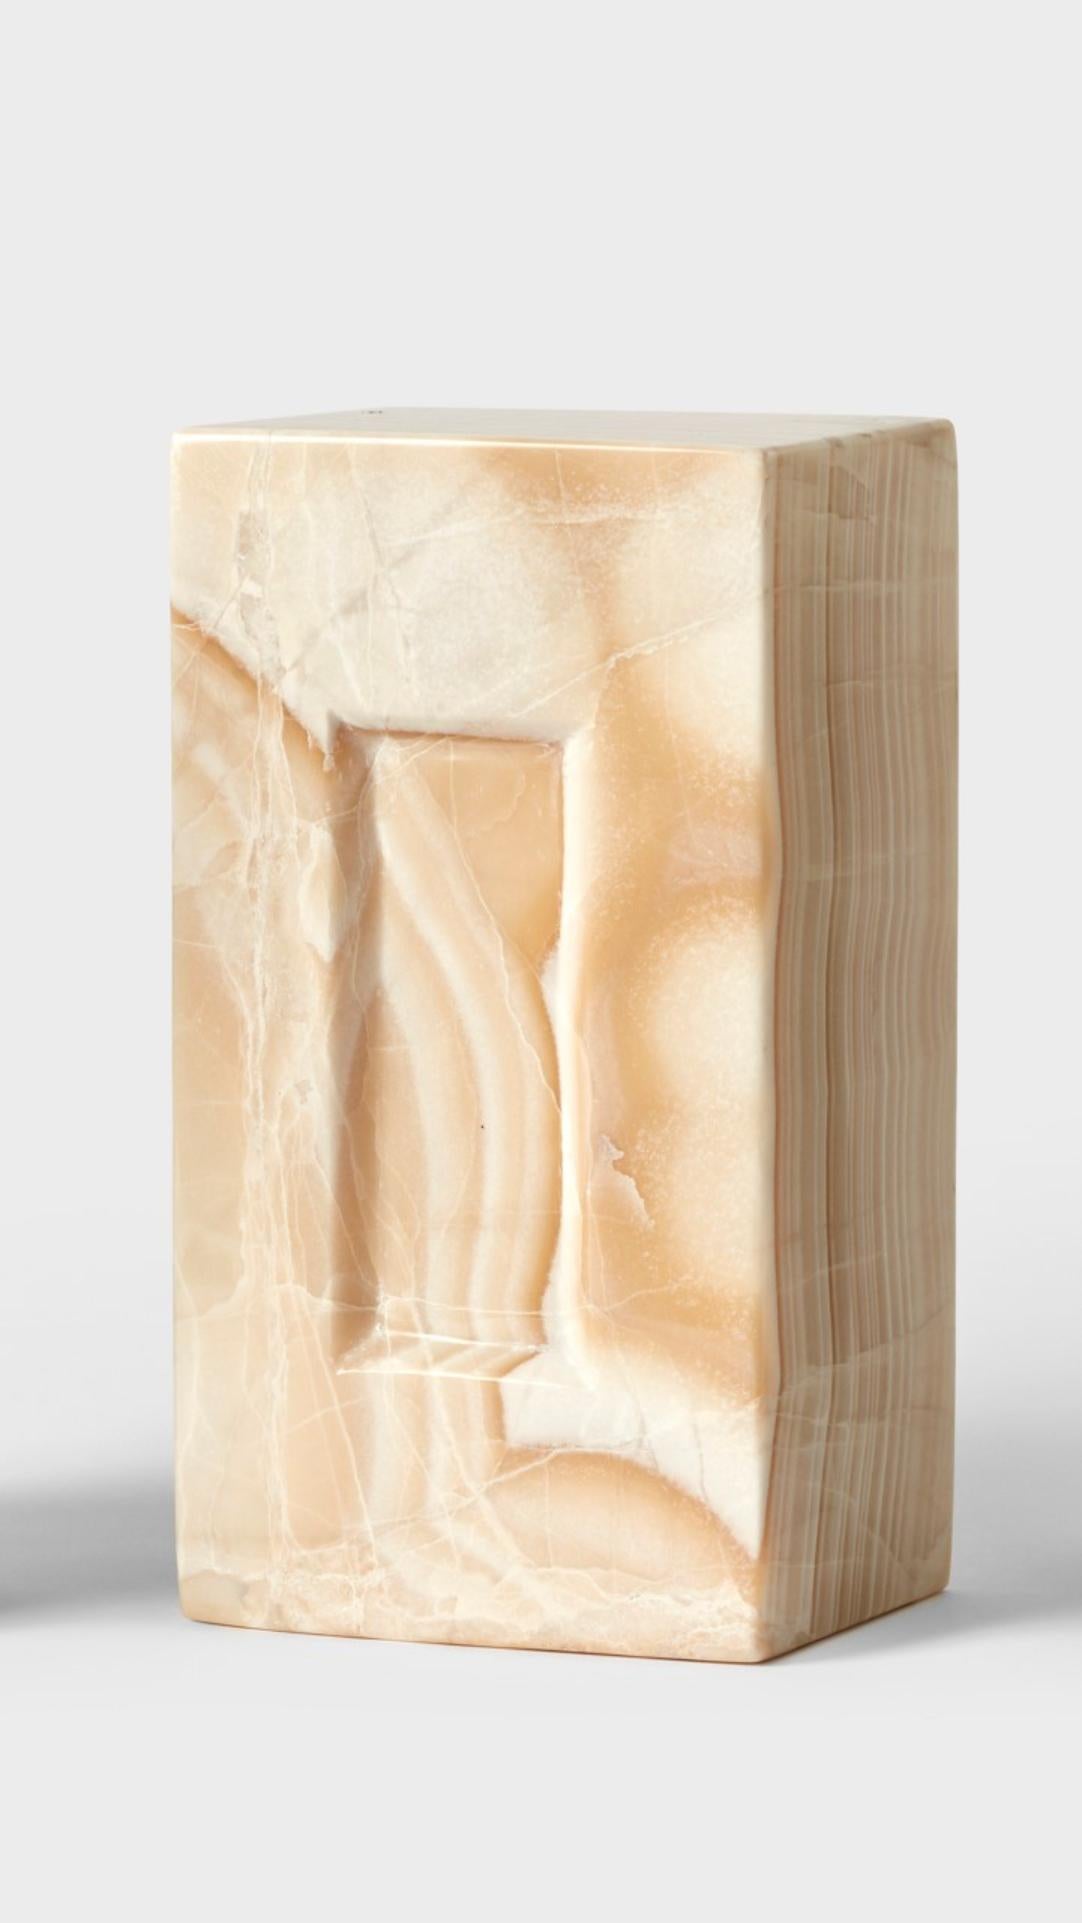 Ziegelstein von Estudio Rafael Freyre
Abmessungen: B 12,5 T 9 x H 23 cm 
MATERIALIEN: Anden-Steine
Auch verfügbar: Andere Oberflächen verfügbar.

Der Ziegelstein ist ein allgemeines konstruktives Element, das Teil des städtischen Imaginären ist. In